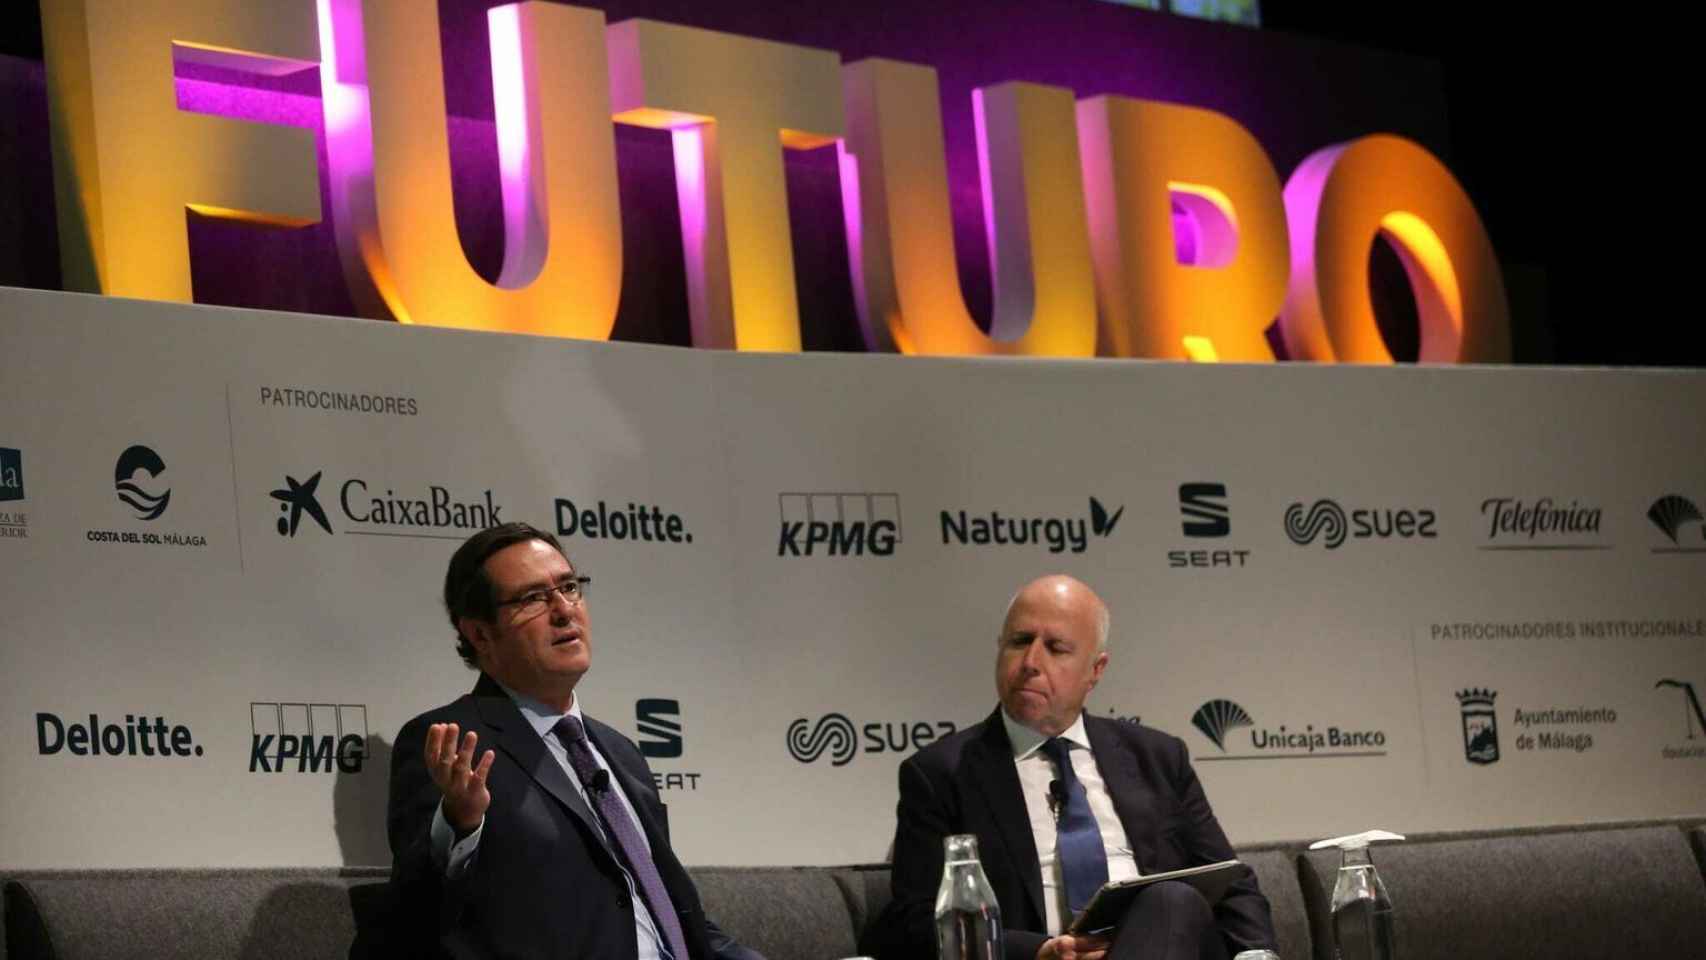 El presidente de CEOE, Antonio Garamendi, y el presidente de KPMG, Hilario Albarracín.